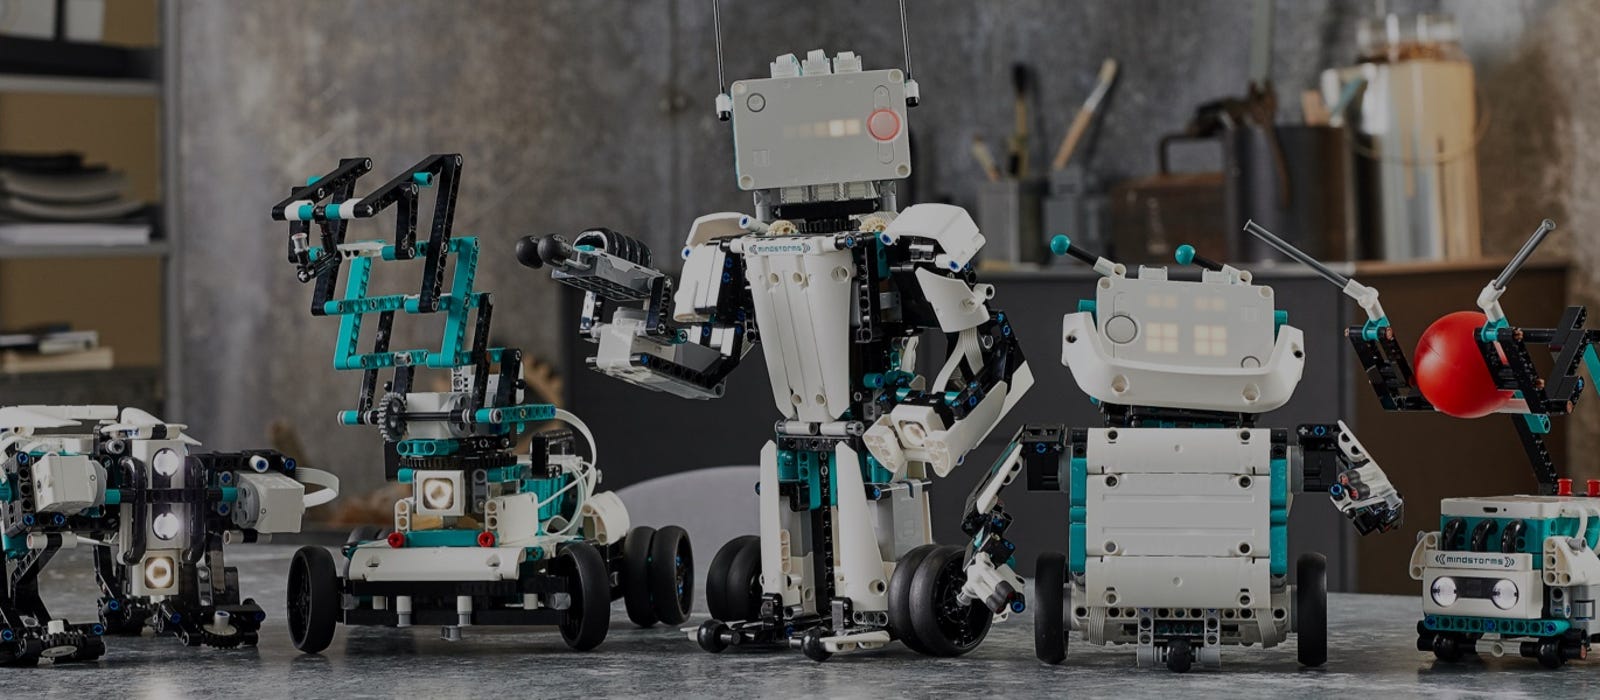 Робот Innovator EVO замена. Робототехника в основном